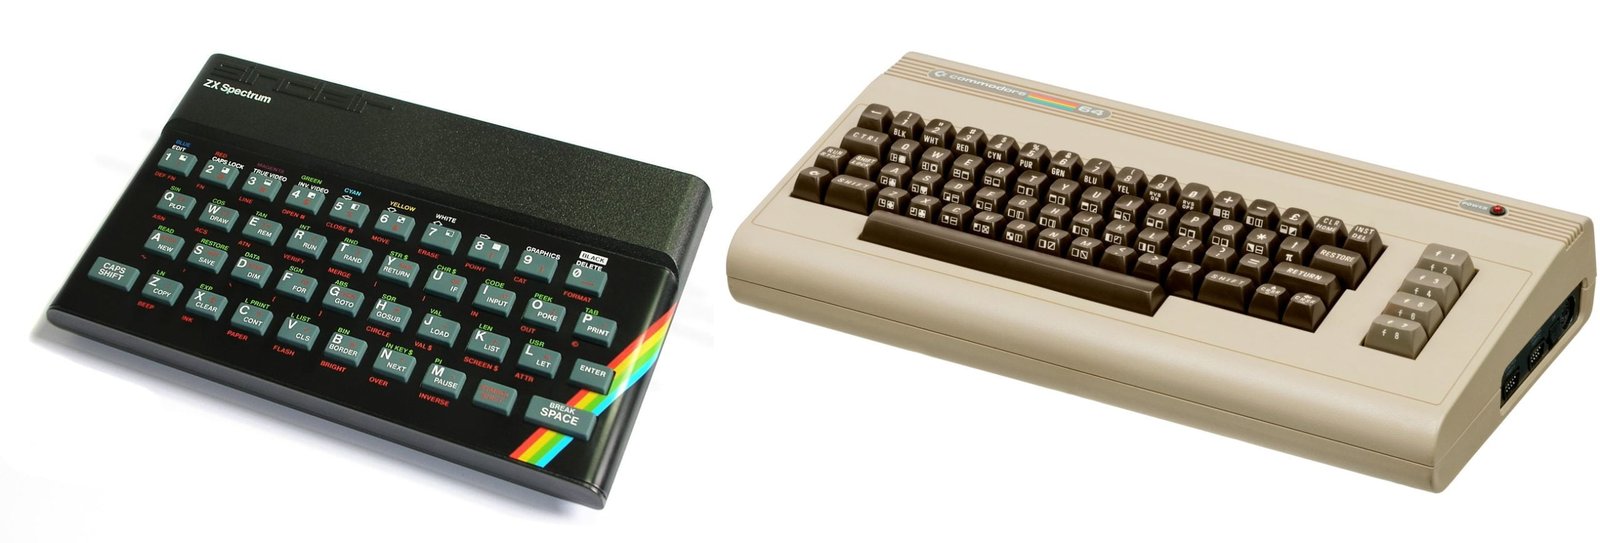 ZX Spectrum vs Commodore 64